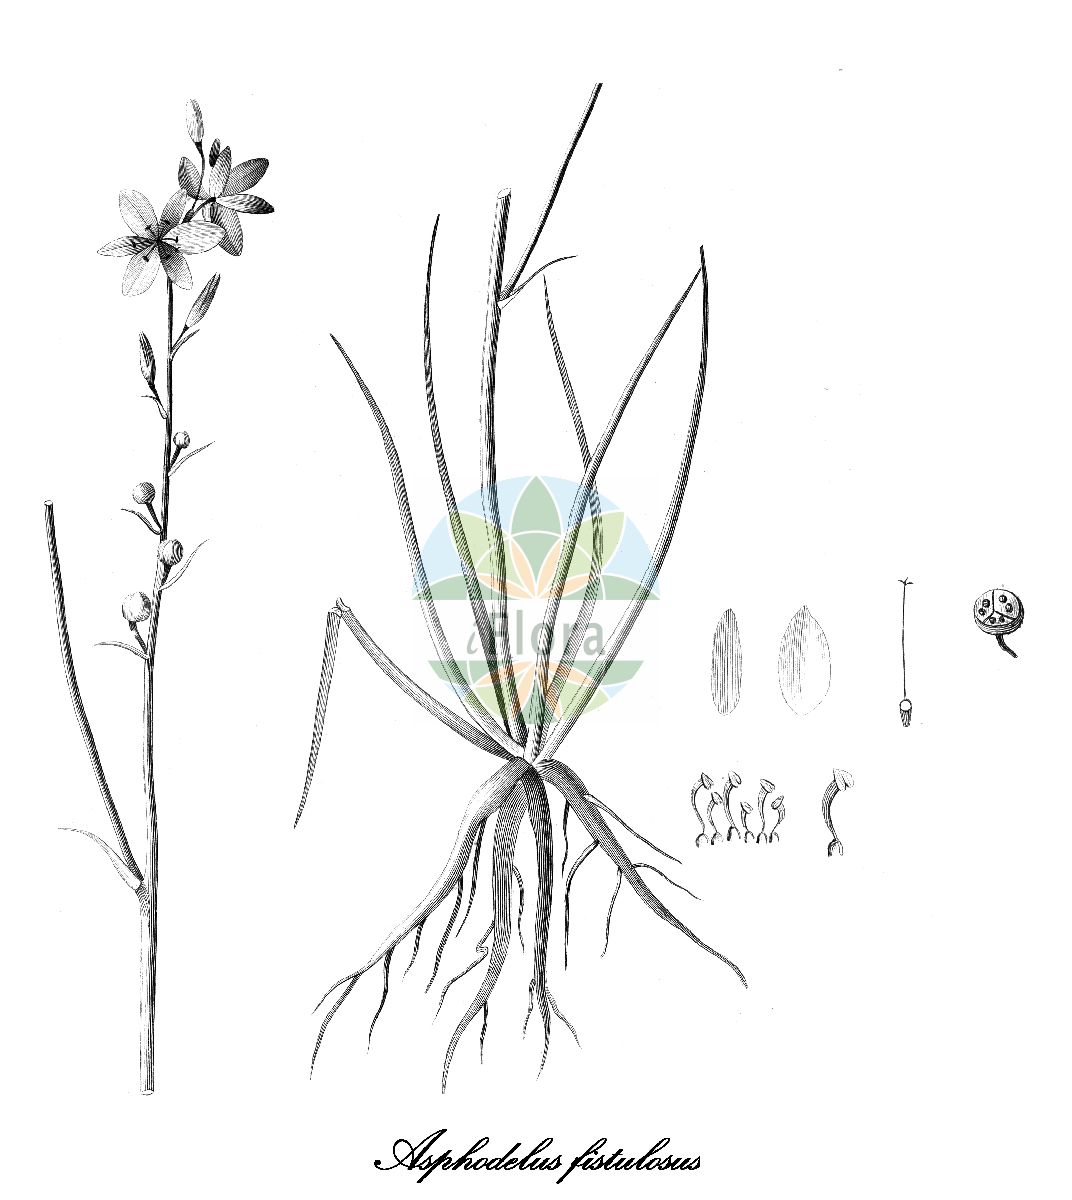 Historische Abbildung von Asphodelus fistulosus (Röhriger Affodill - Onion-weed). Das Bild zeigt Blatt, Bluete, Frucht und Same. ---- Historical Drawing of Asphodelus fistulosus (Röhriger Affodill - Onion-weed). The image is showing leaf, flower, fruit and seed.(Asphodelus fistulosus,Röhriger Affodill,Onion-weed,Asphodeloides ramosa,Ophioprason fistulosum,Verinea fistulosa,Asphodelus,Affodill,Asphodel,Xanthorrhoeaceae,Tagliliengewächse,Blatt,Bluete,Frucht,Same,leaf,flower,fruit,seed,Cavanilles (1785-1790))